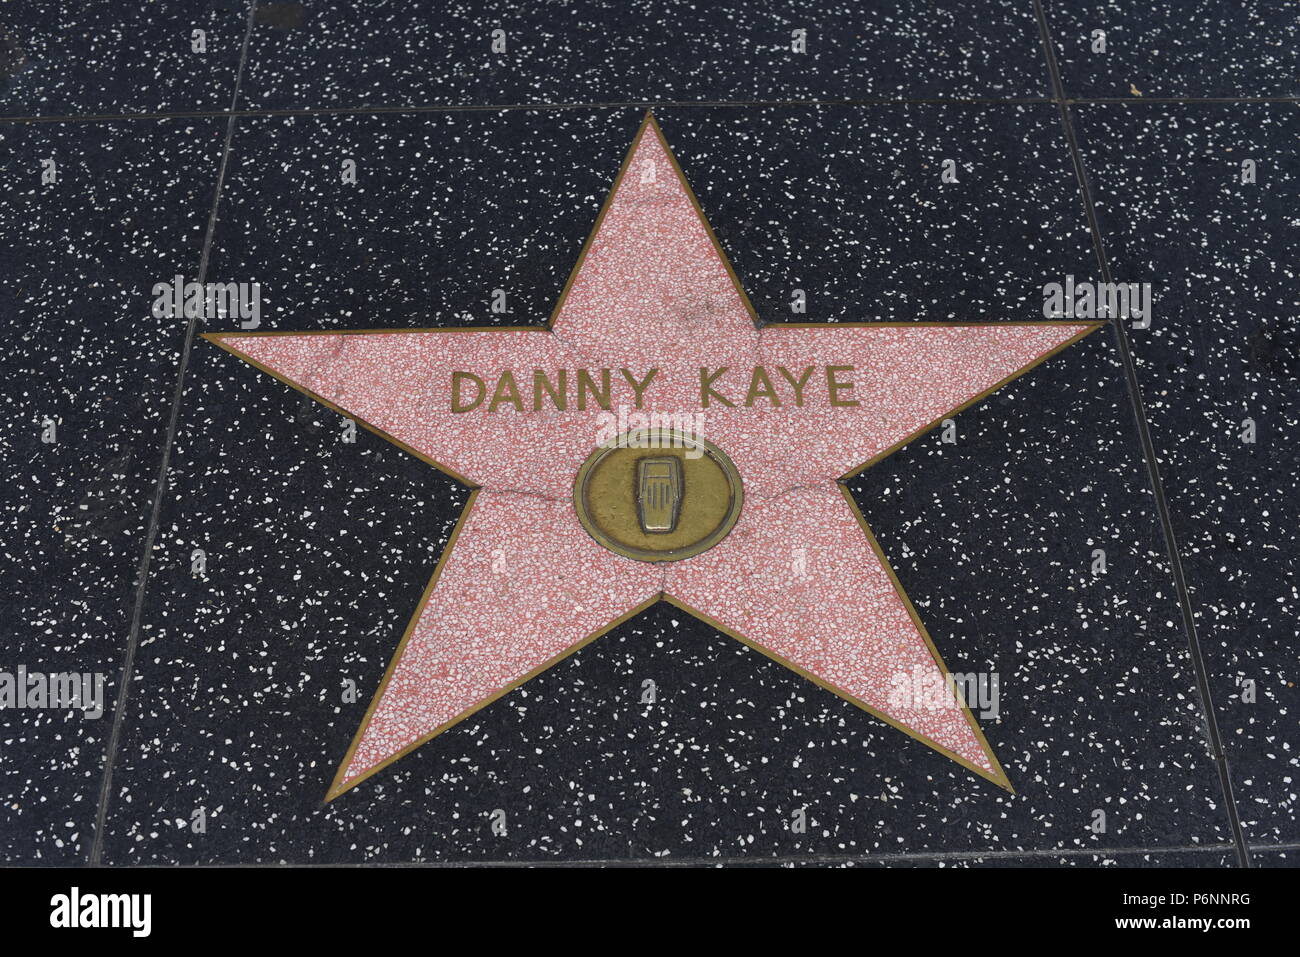 HOLLYWOOD, CA - 29 Giugno: Danny Kaye stella sulla Hollywood Walk of Fame in Hollywood, la California il 29 giugno 2018. Foto Stock